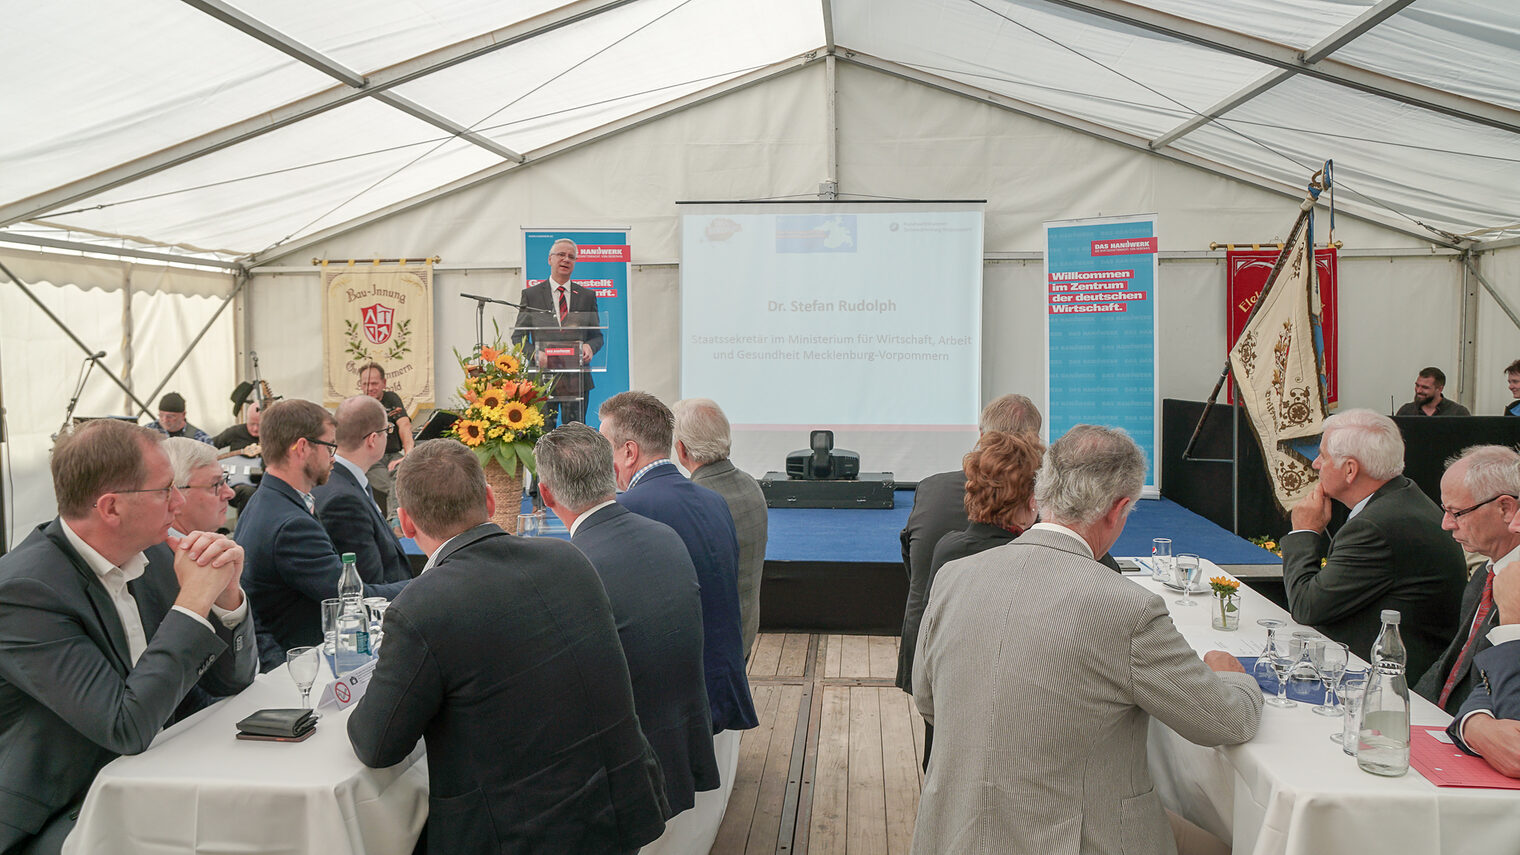 Dr. Stefan Rudolph, Staatssekretär im Ministerium für Wirtschaft, Arbeit und Gesundheit Mecklenburg-Vorpommern hielt ebenfalls eine Rede auf dem Tag des Ehrenamtes in Greifswald